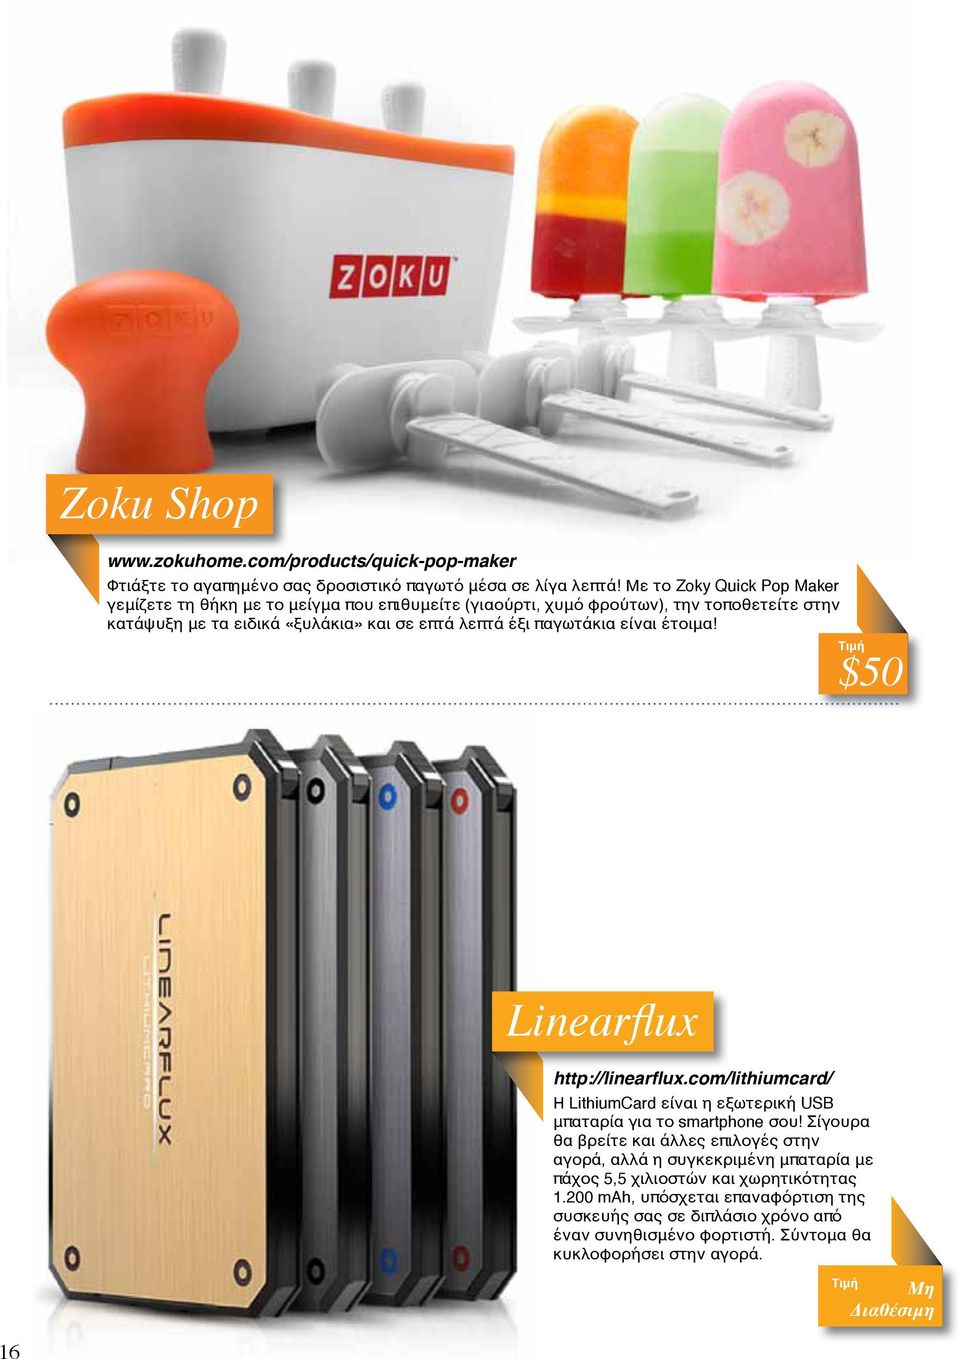 παγωτάκια είναι έτοιμα! Τιμή $50 Linearflux http://linearflux.com/lithiumcard/ Η LithiumCard είναι η εξωτερική USB μπαταρία για το smartphone σου!